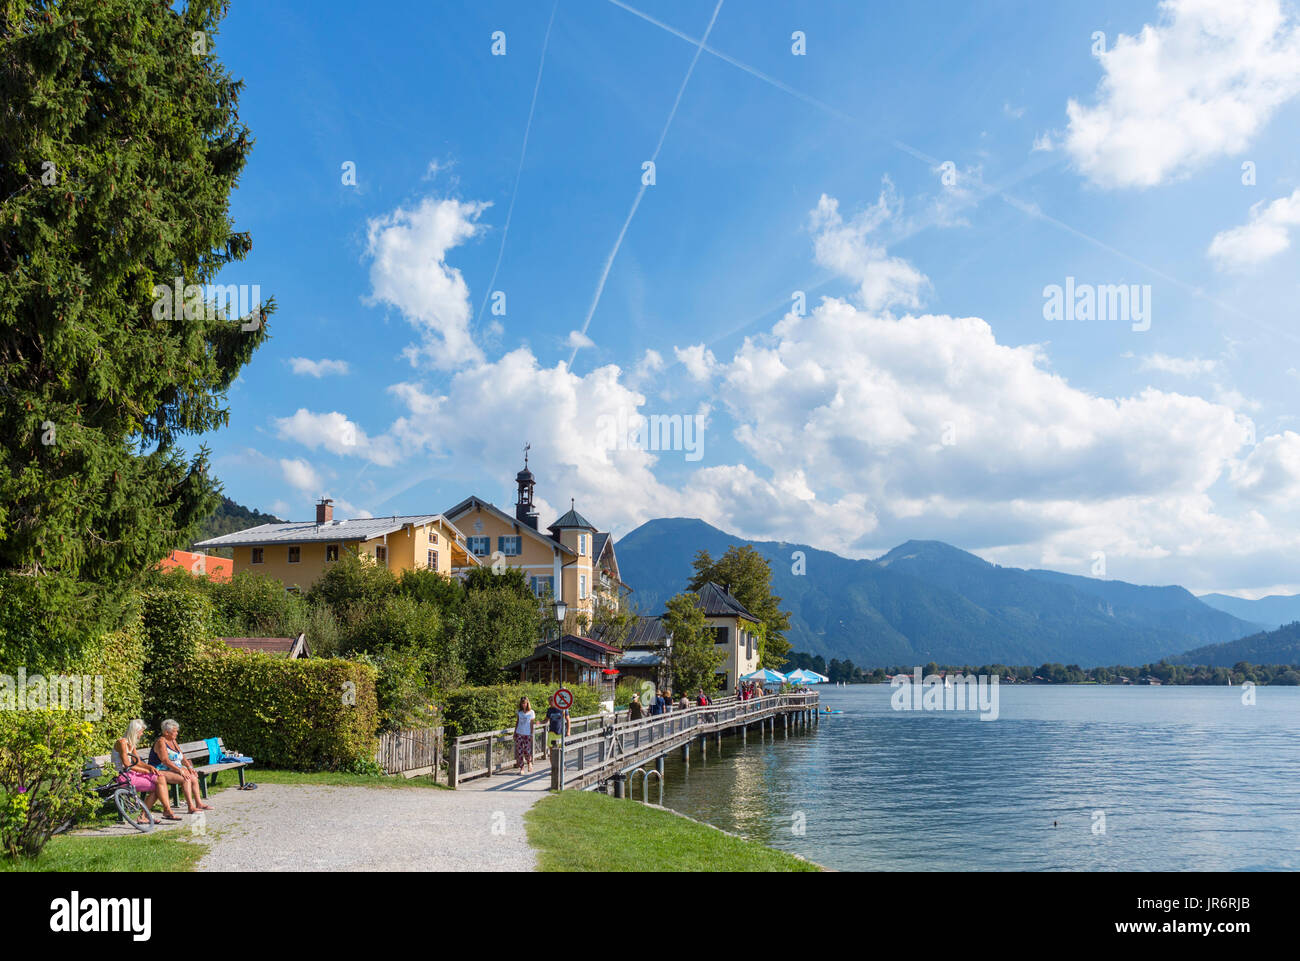 Tegernsee, Lake Tegernsee, Bavarian Alps, Bavaria, Germany Stock Photo